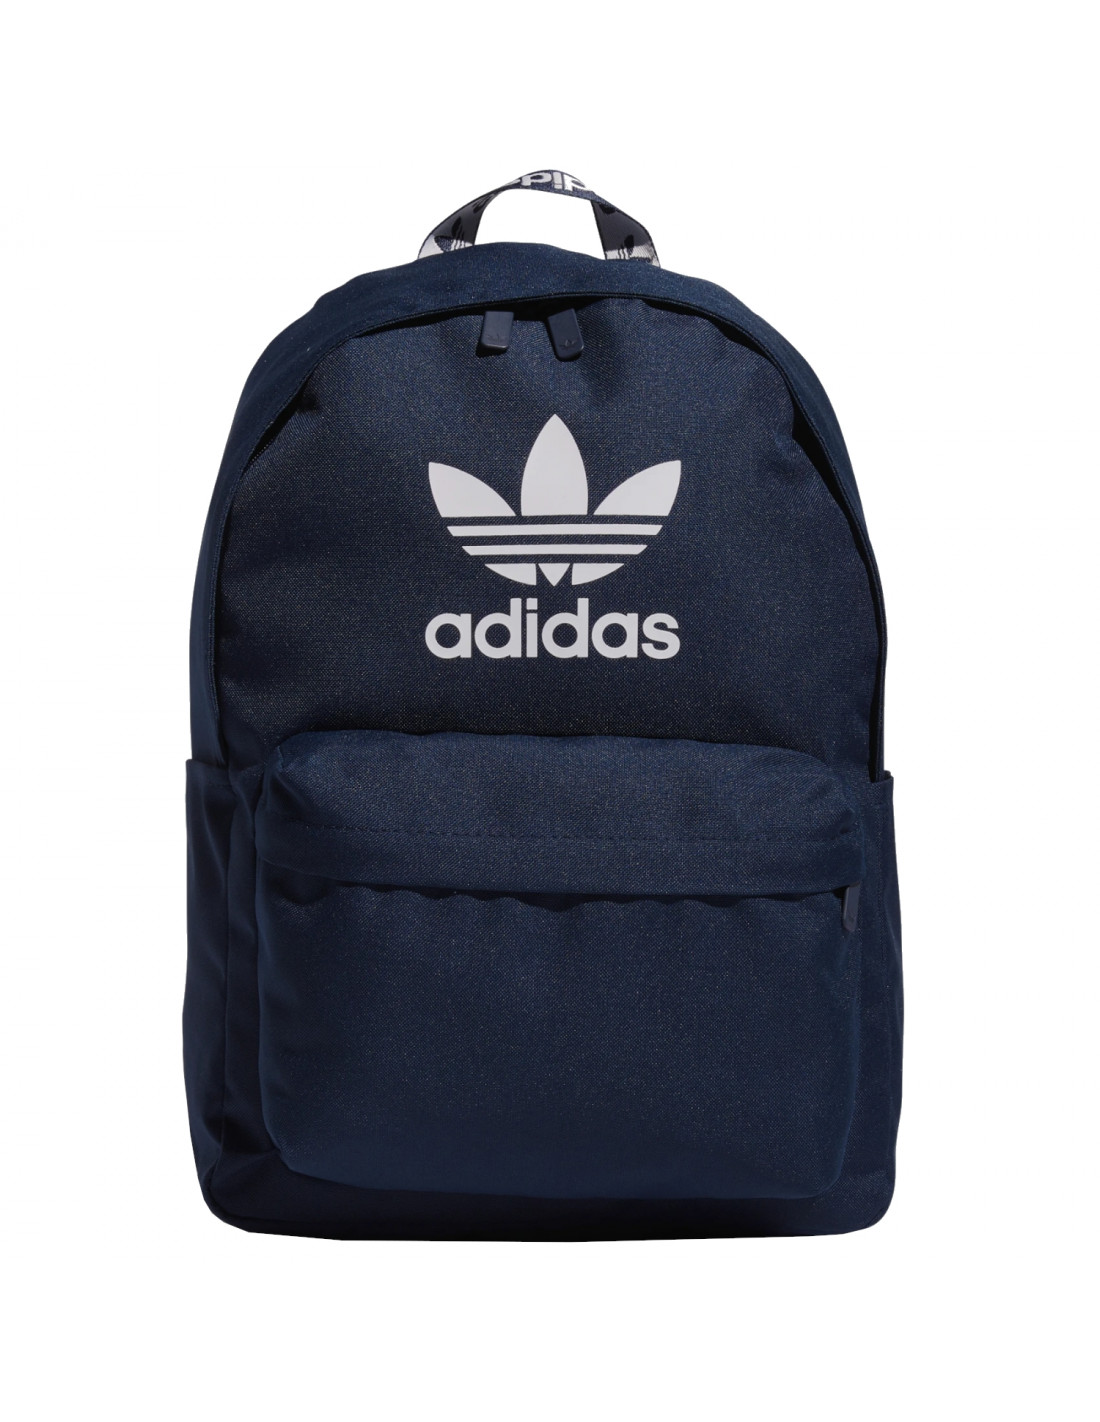 adidas Adicolor Backpack HK2621